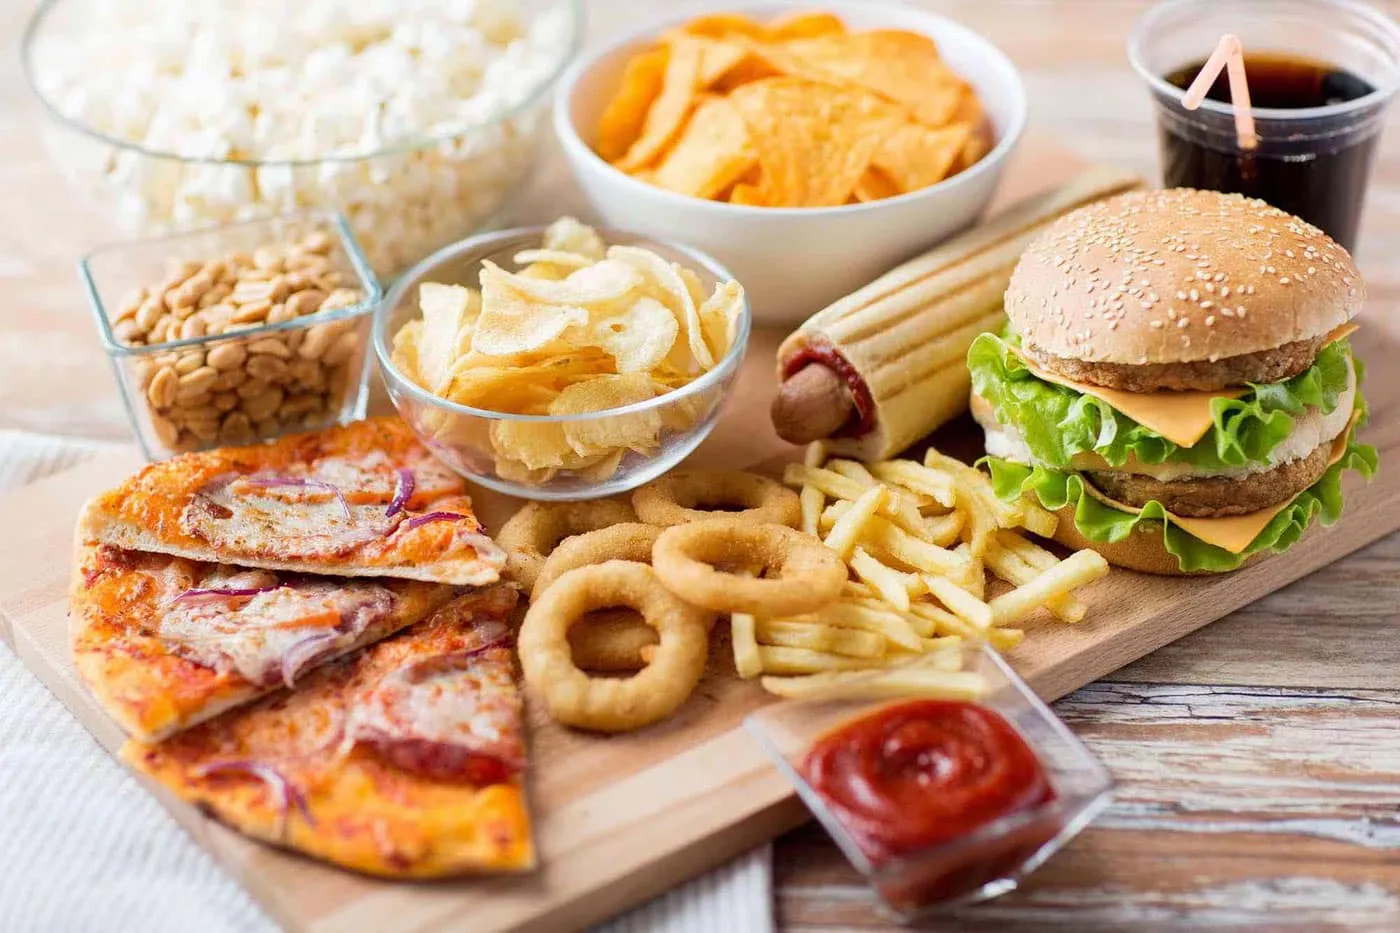 Tổng hợp thức ăn nhanh (hamberger, pizza, khoai tây chiên, nước uống có cồn,...) là nguyên nhân làm tăng nguy cơ bệnh đái tháo đường.